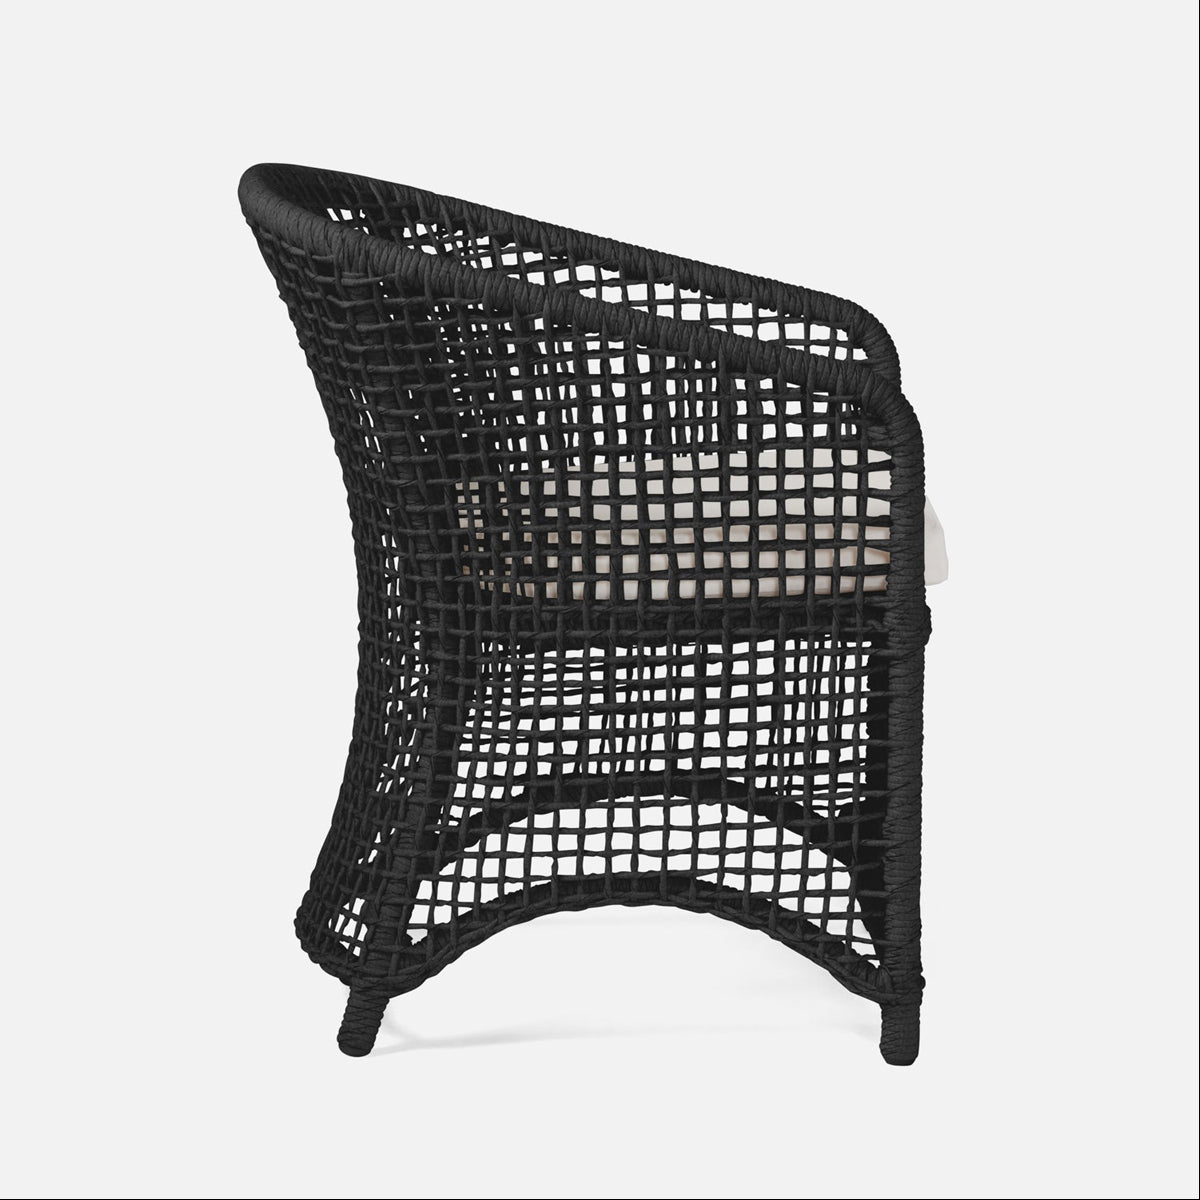 Made Goods Helena Open-Weave Barrel Outdoor Dining Chair in Alsek